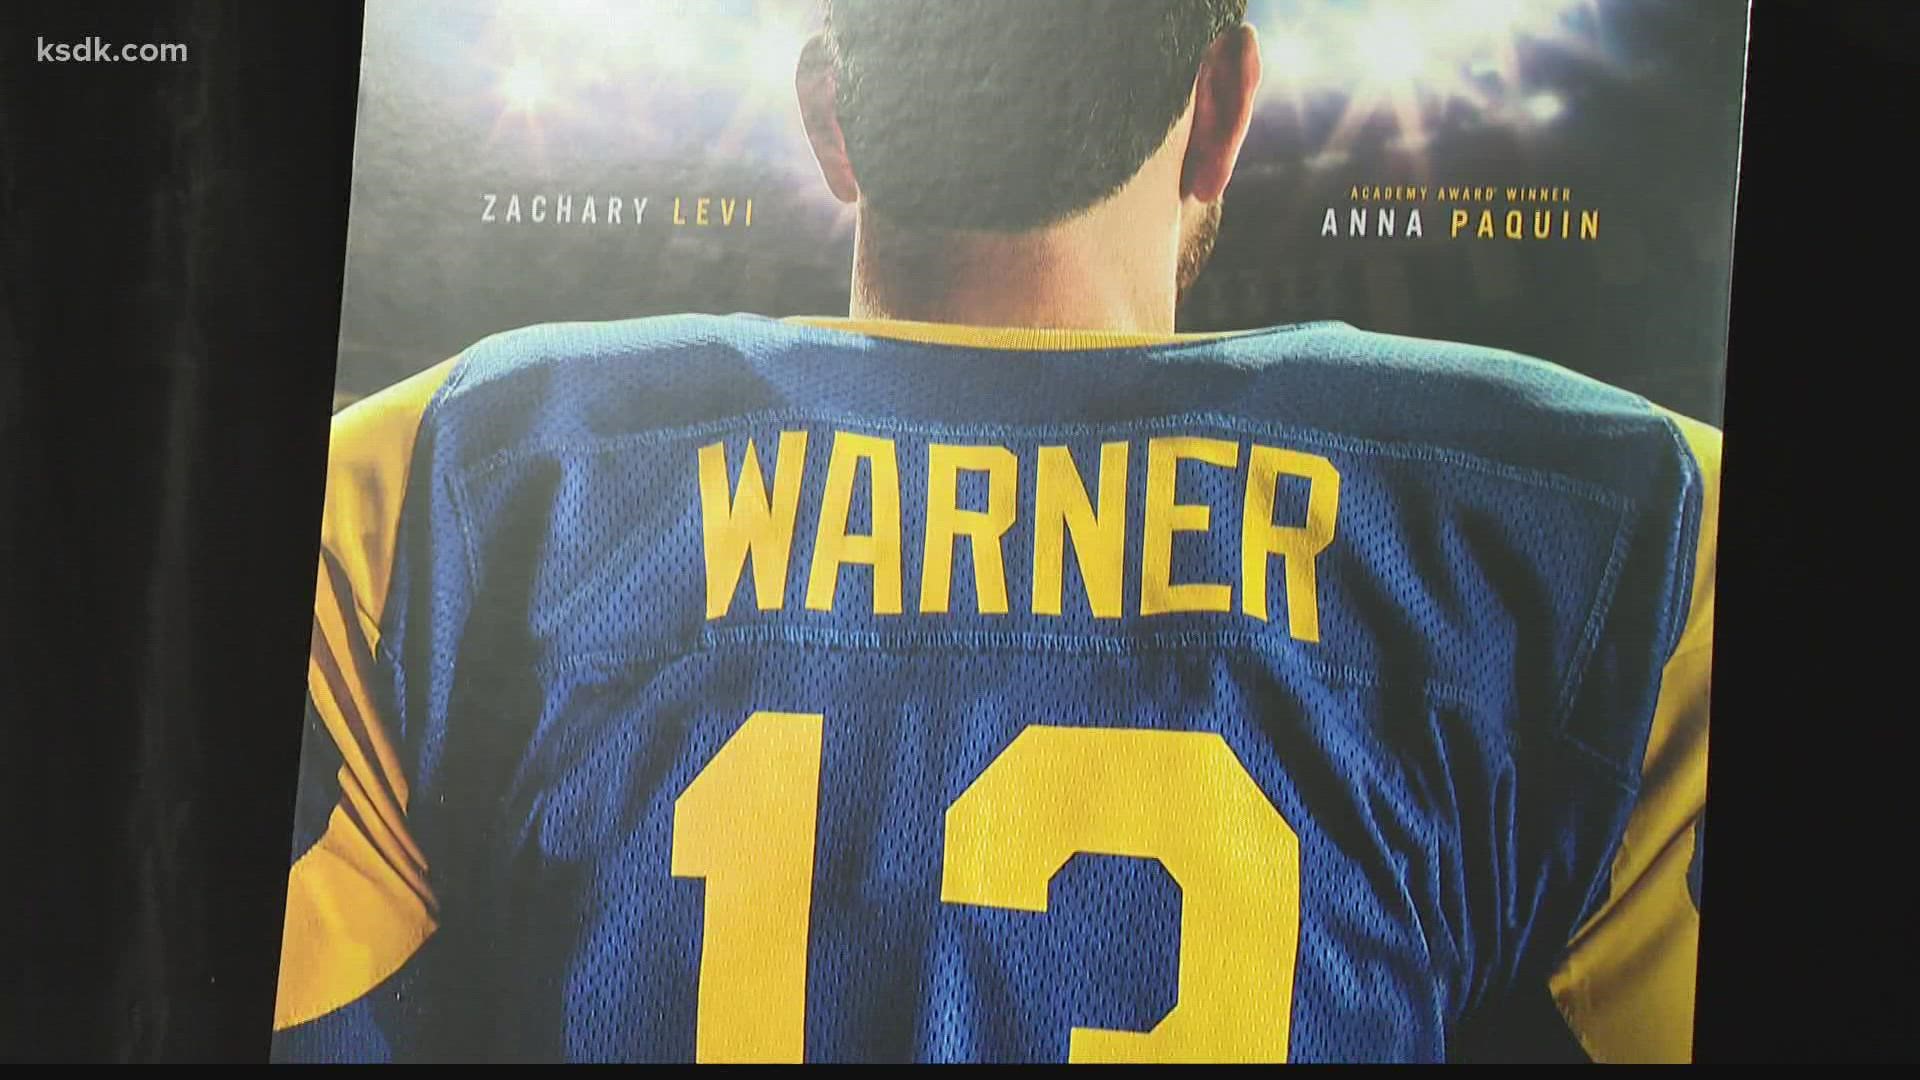 Kurt Warner biopic premieres in St. Louis